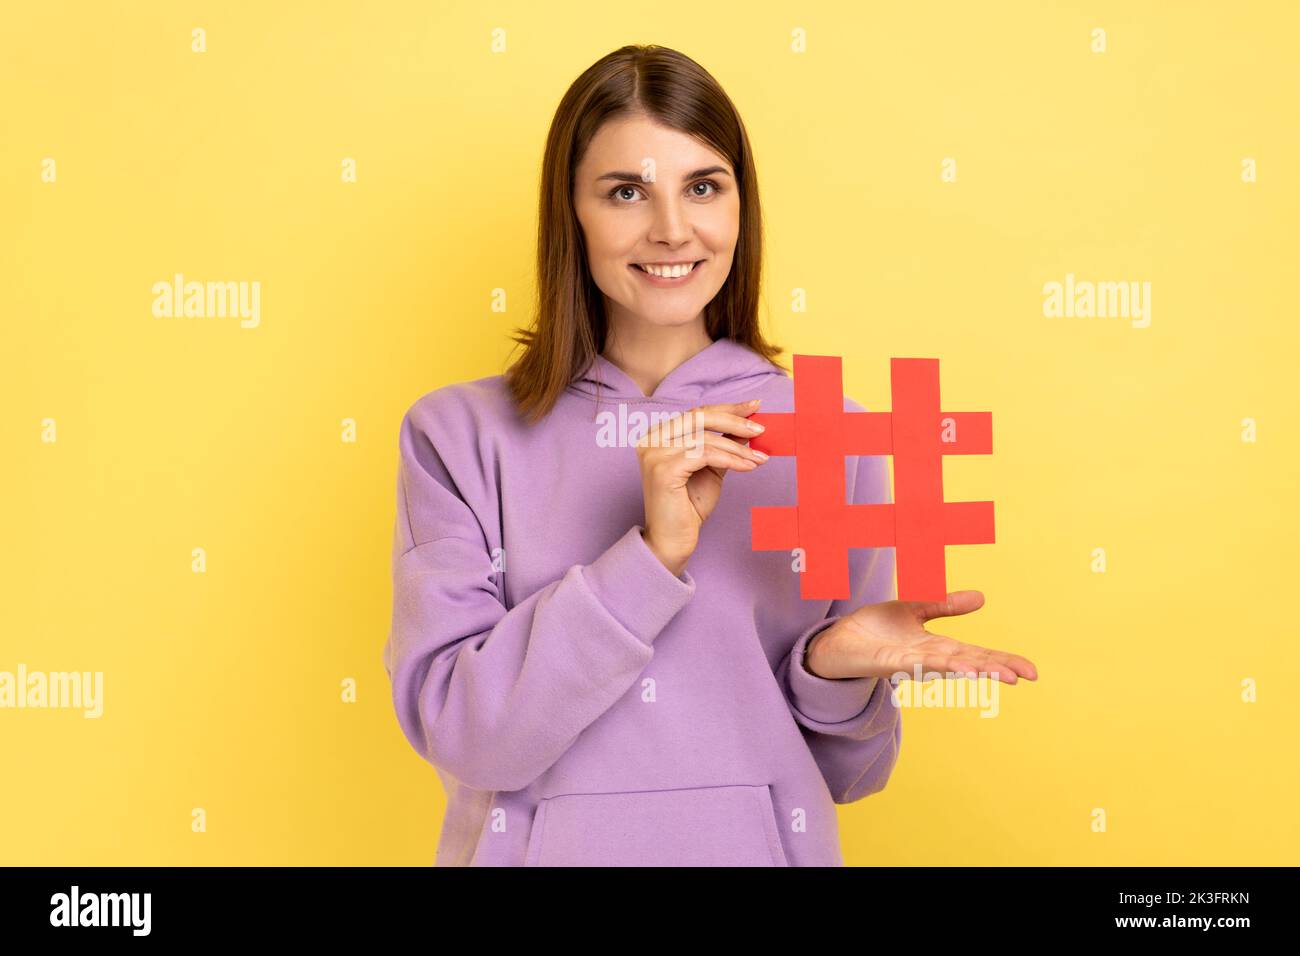 Ritratto di giovane donna in piedi presentando hashtag rosso, tagging blog tendenze, argomento virale in rete sociale, indossare felpa con cappuccio viola. Studio al coperto isolato su sfondo giallo. Foto Stock